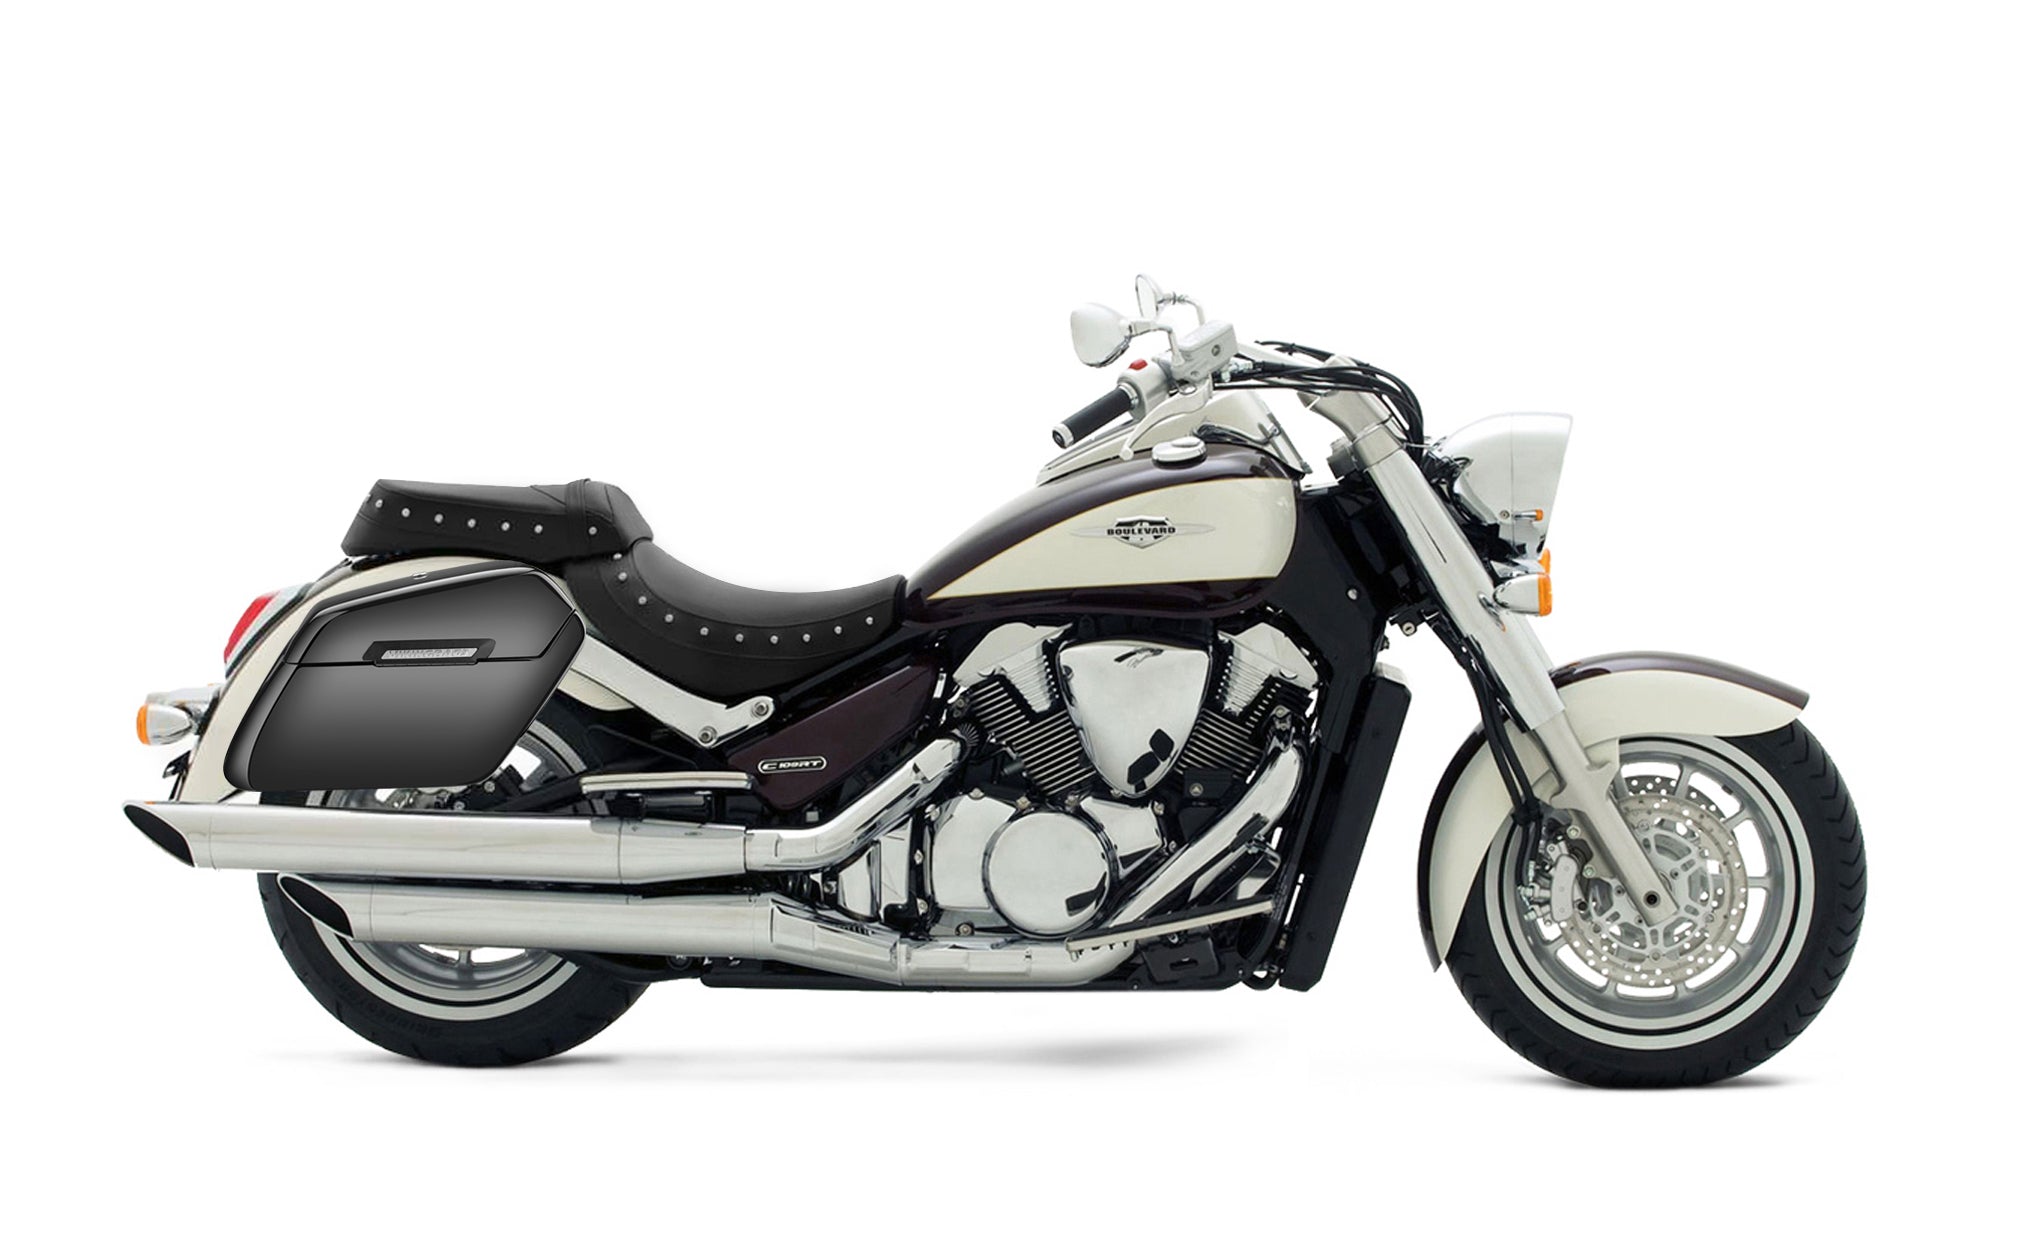 Viking Baldur Extra Large Suzuki Boulevard C109 Painted Motorcycle Hard Saddlebags on Bike Photo @expand